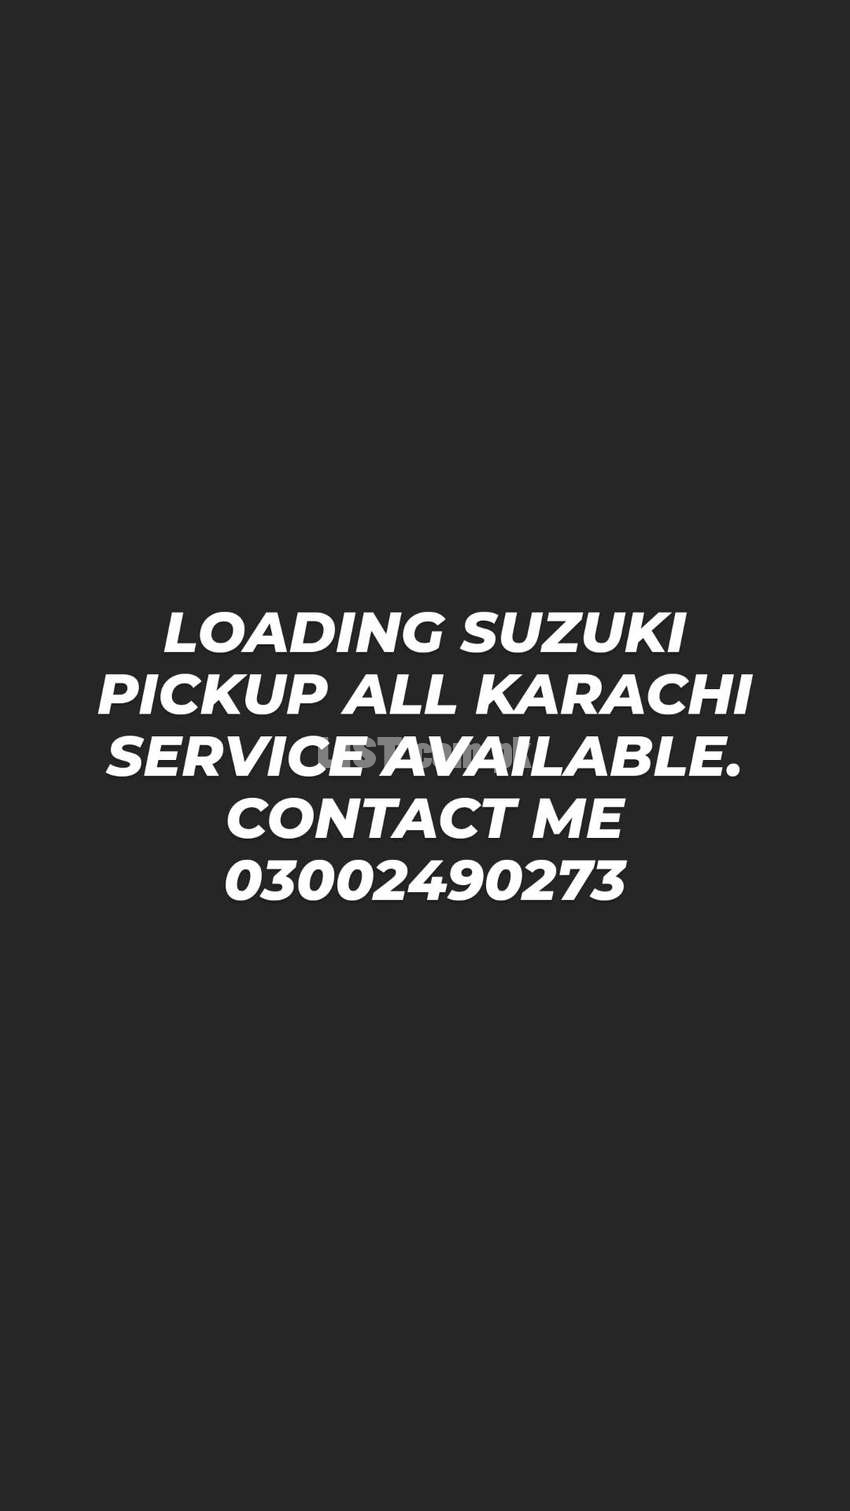 Suzuki pickup service